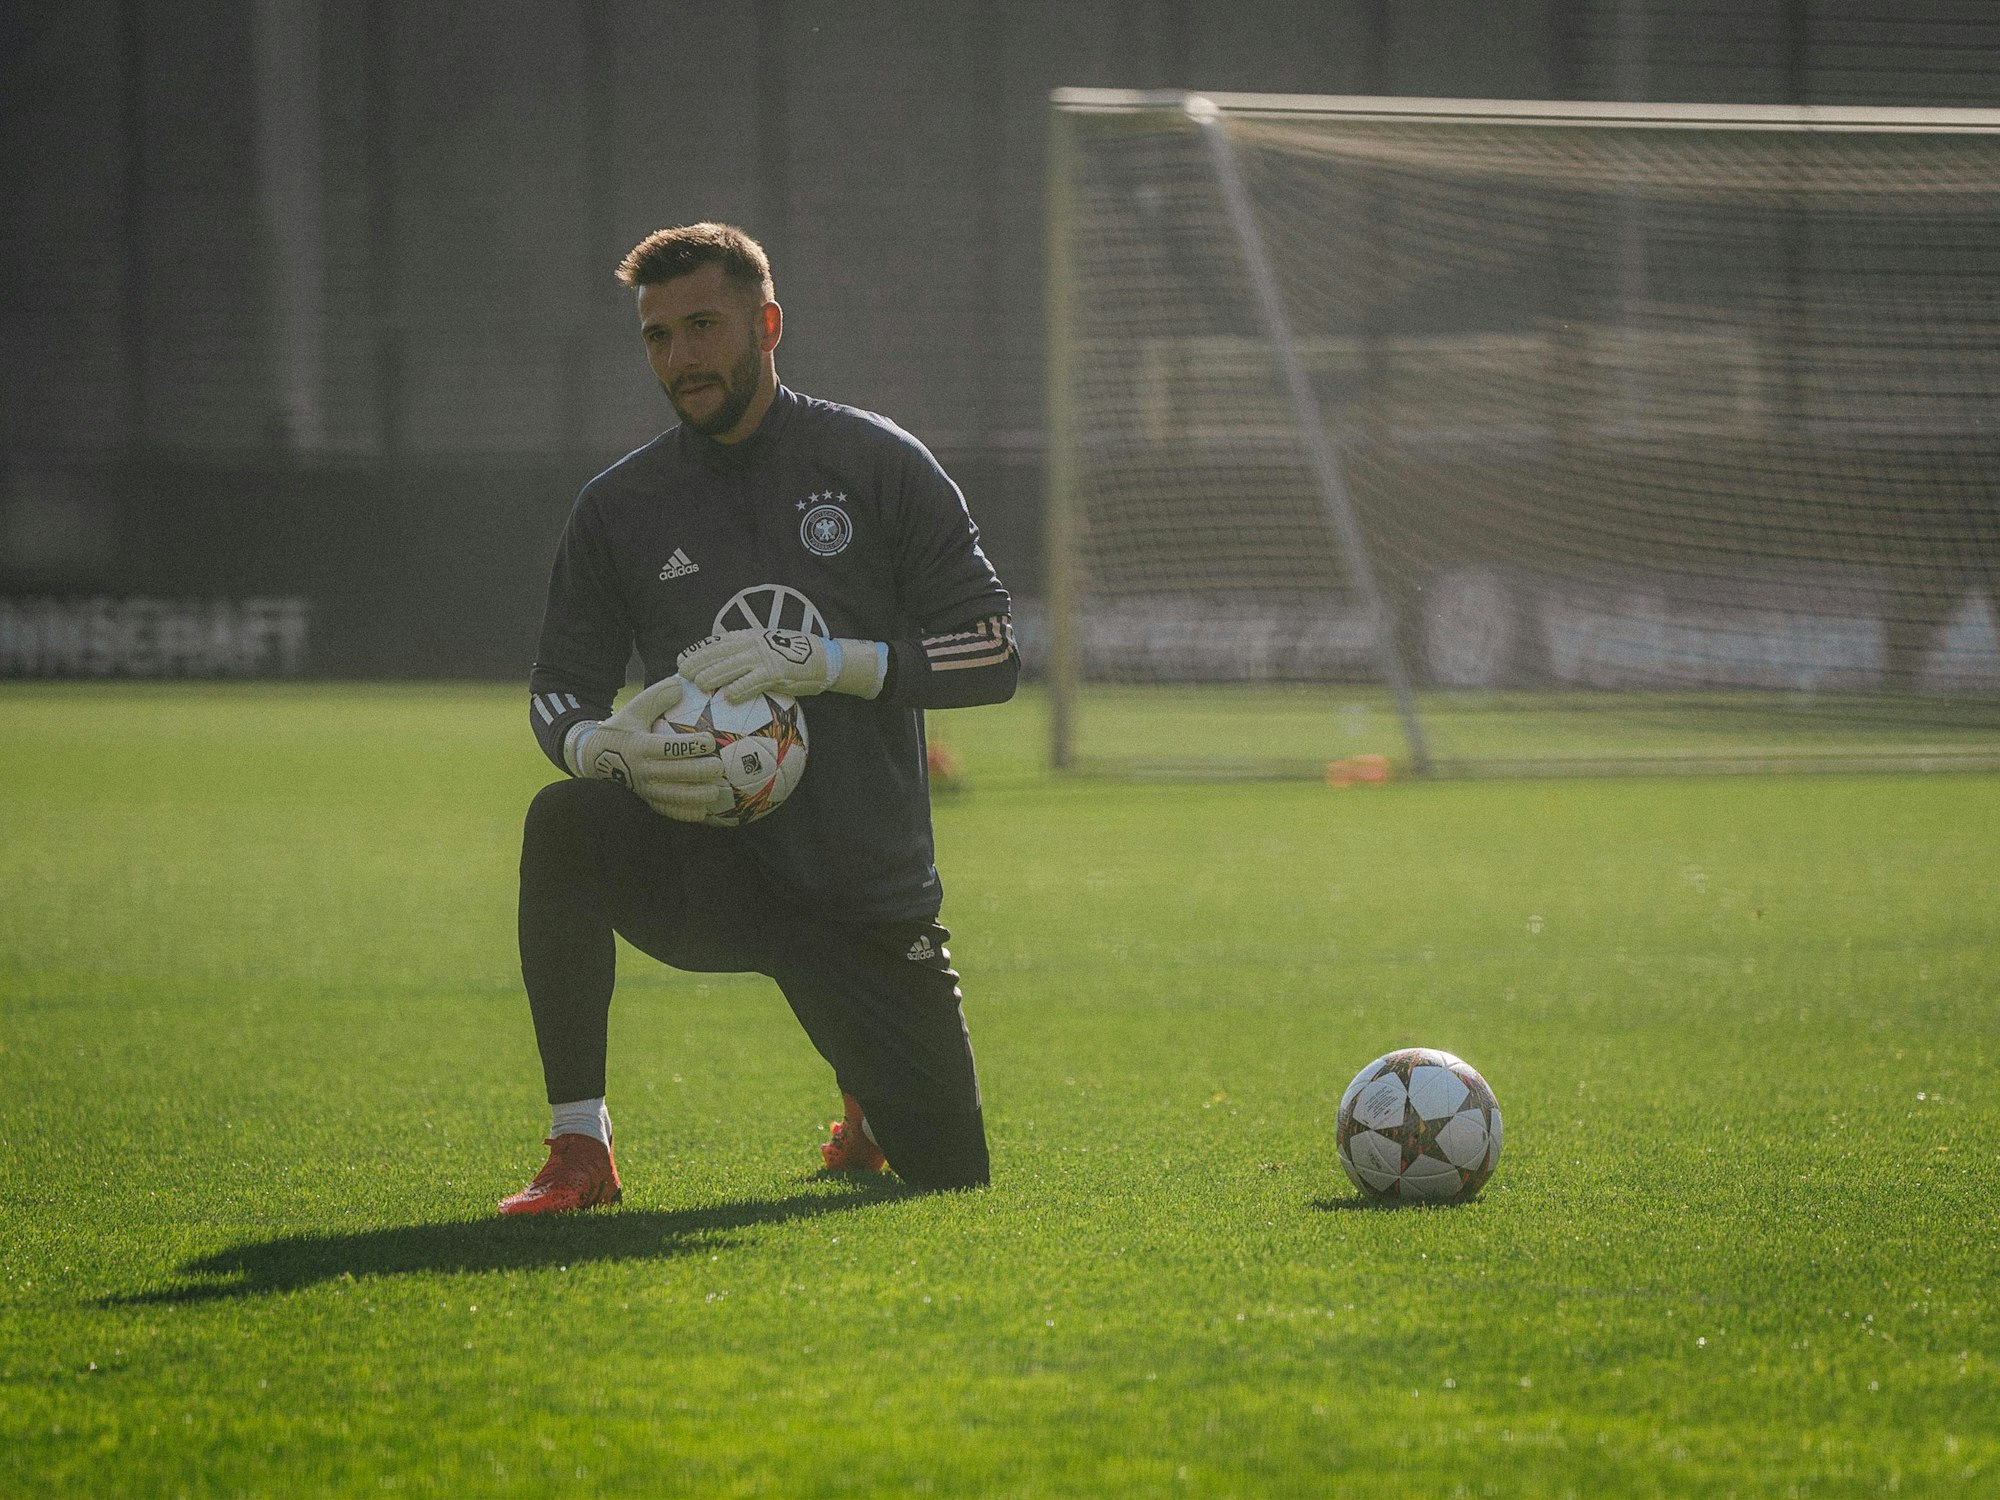 HSV-Torhüter Daniel Heuer Fernandes (28) mit dem Ball in der Hand beim Training der deutschen Nationalmannschaft.